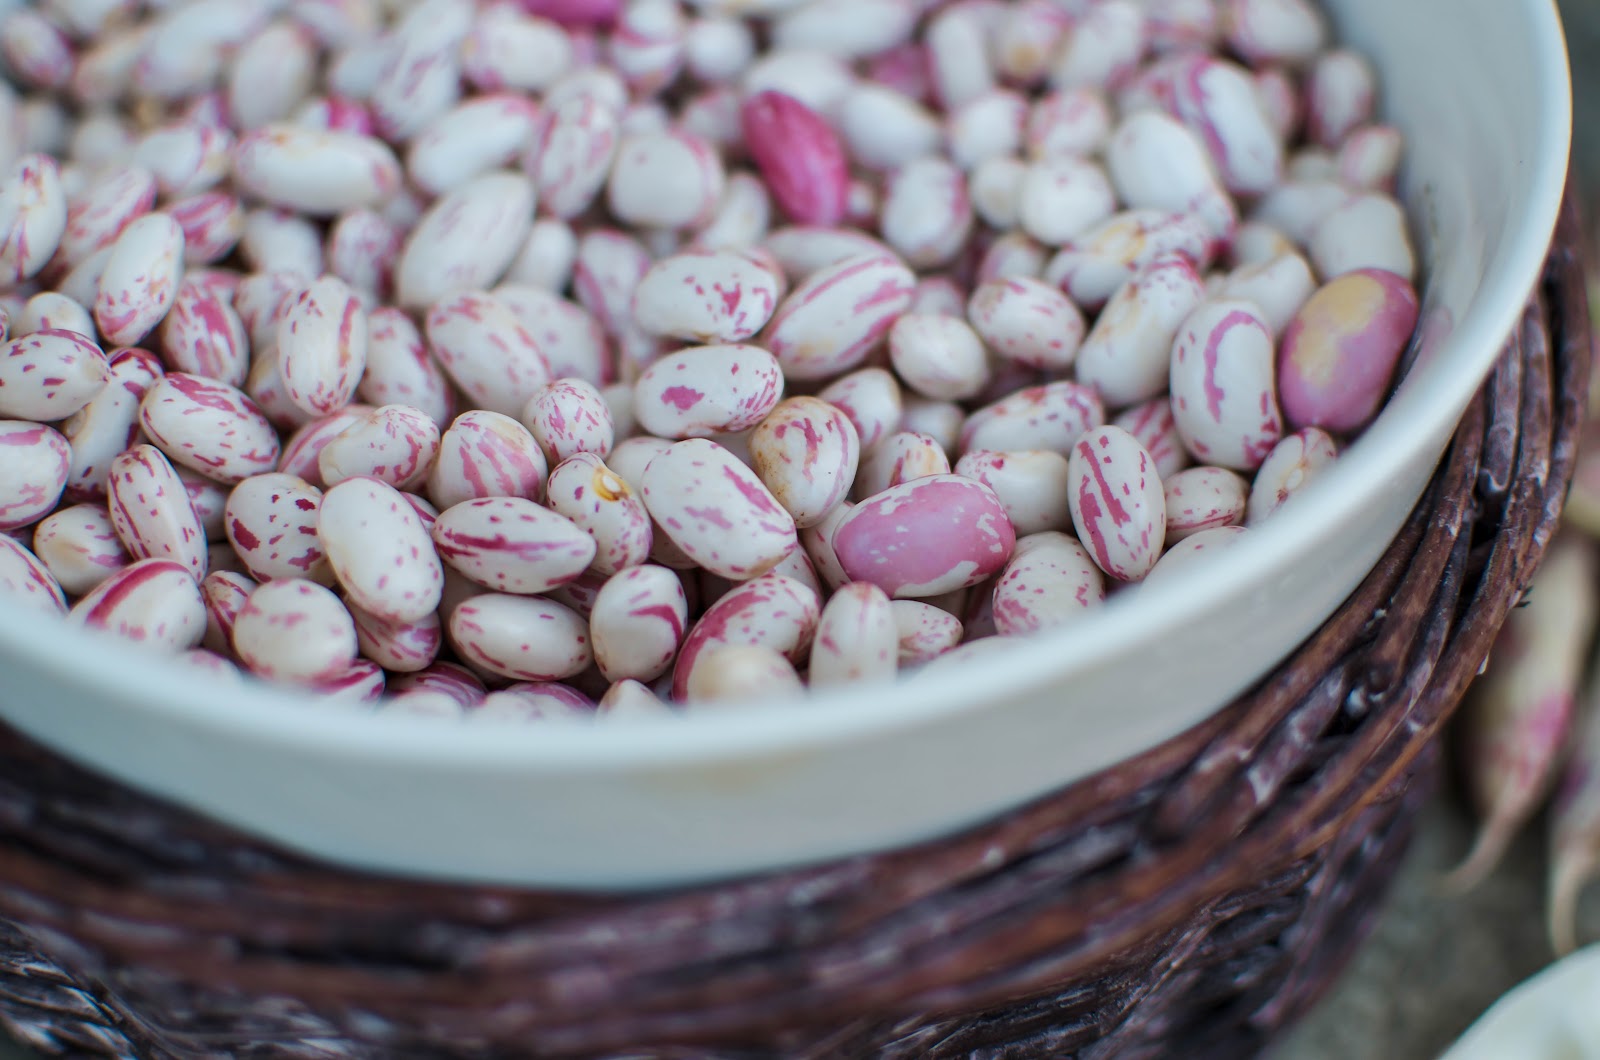 La Tavola Marche: The Beautiful Borlotti: Speckled Cranberry Beans {5 Recipes}